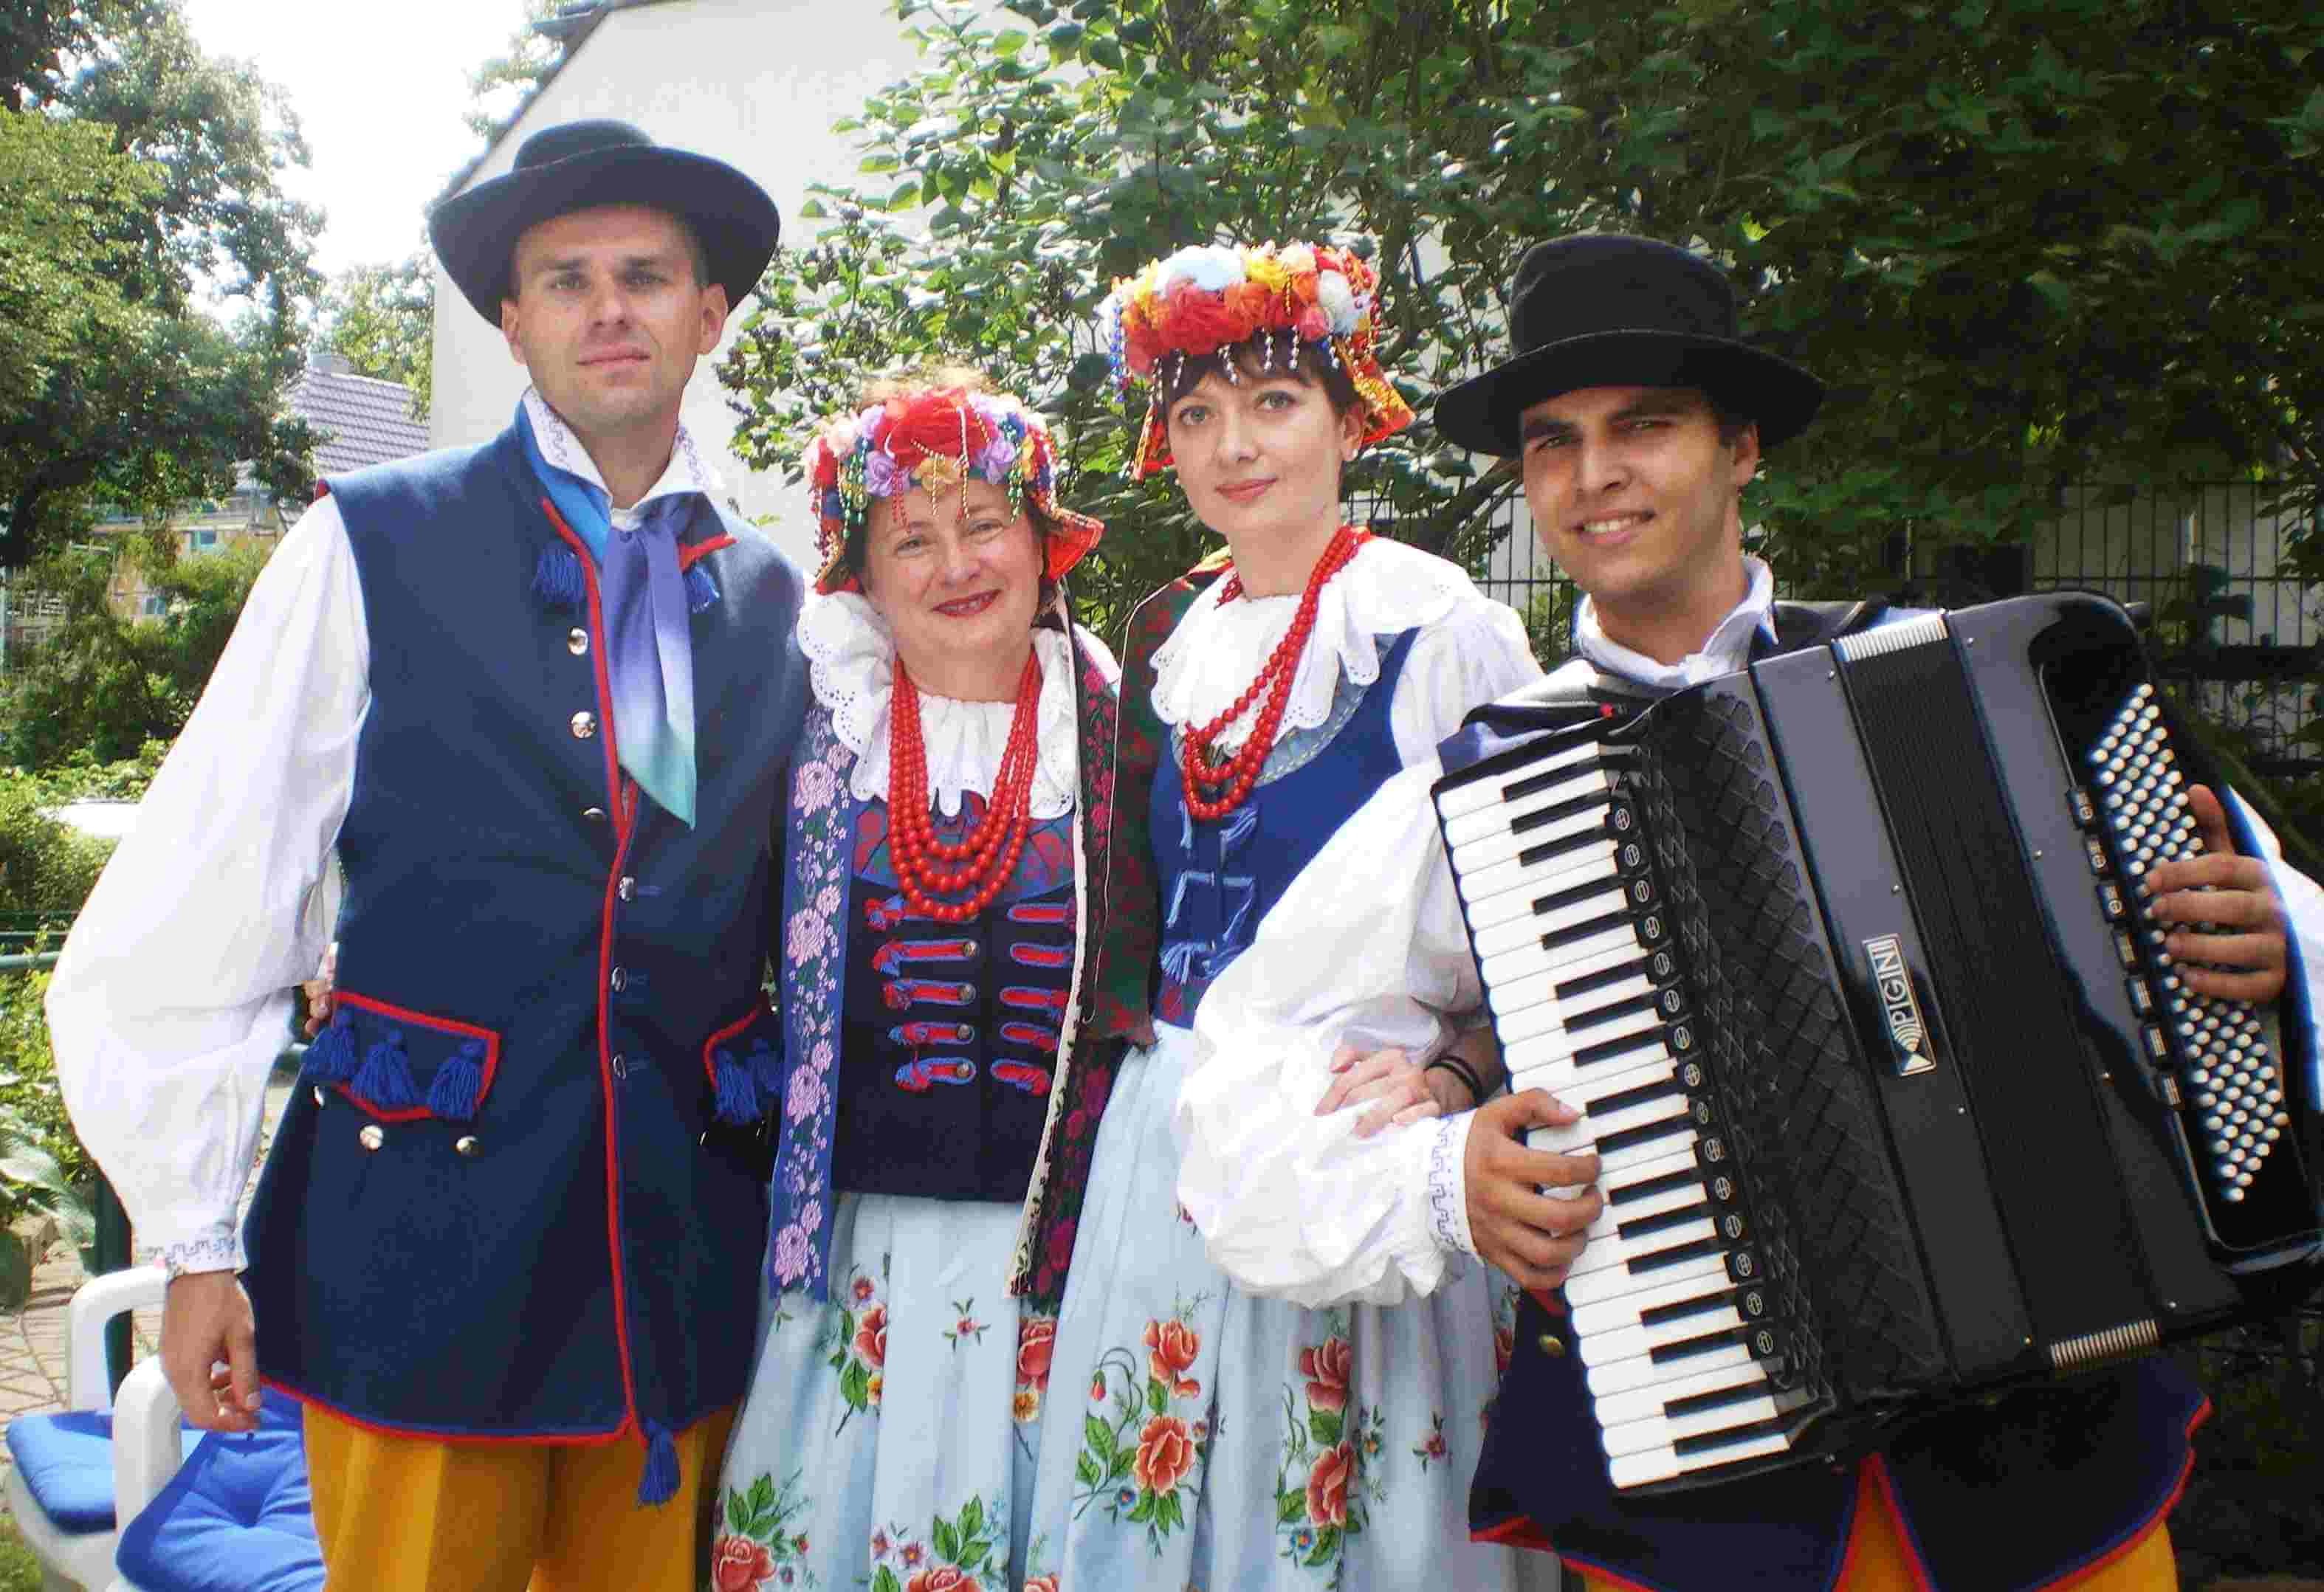 Geschichte, Musik und Piroggen: Villa Donnersmarck feiert polnisches Sommerfest